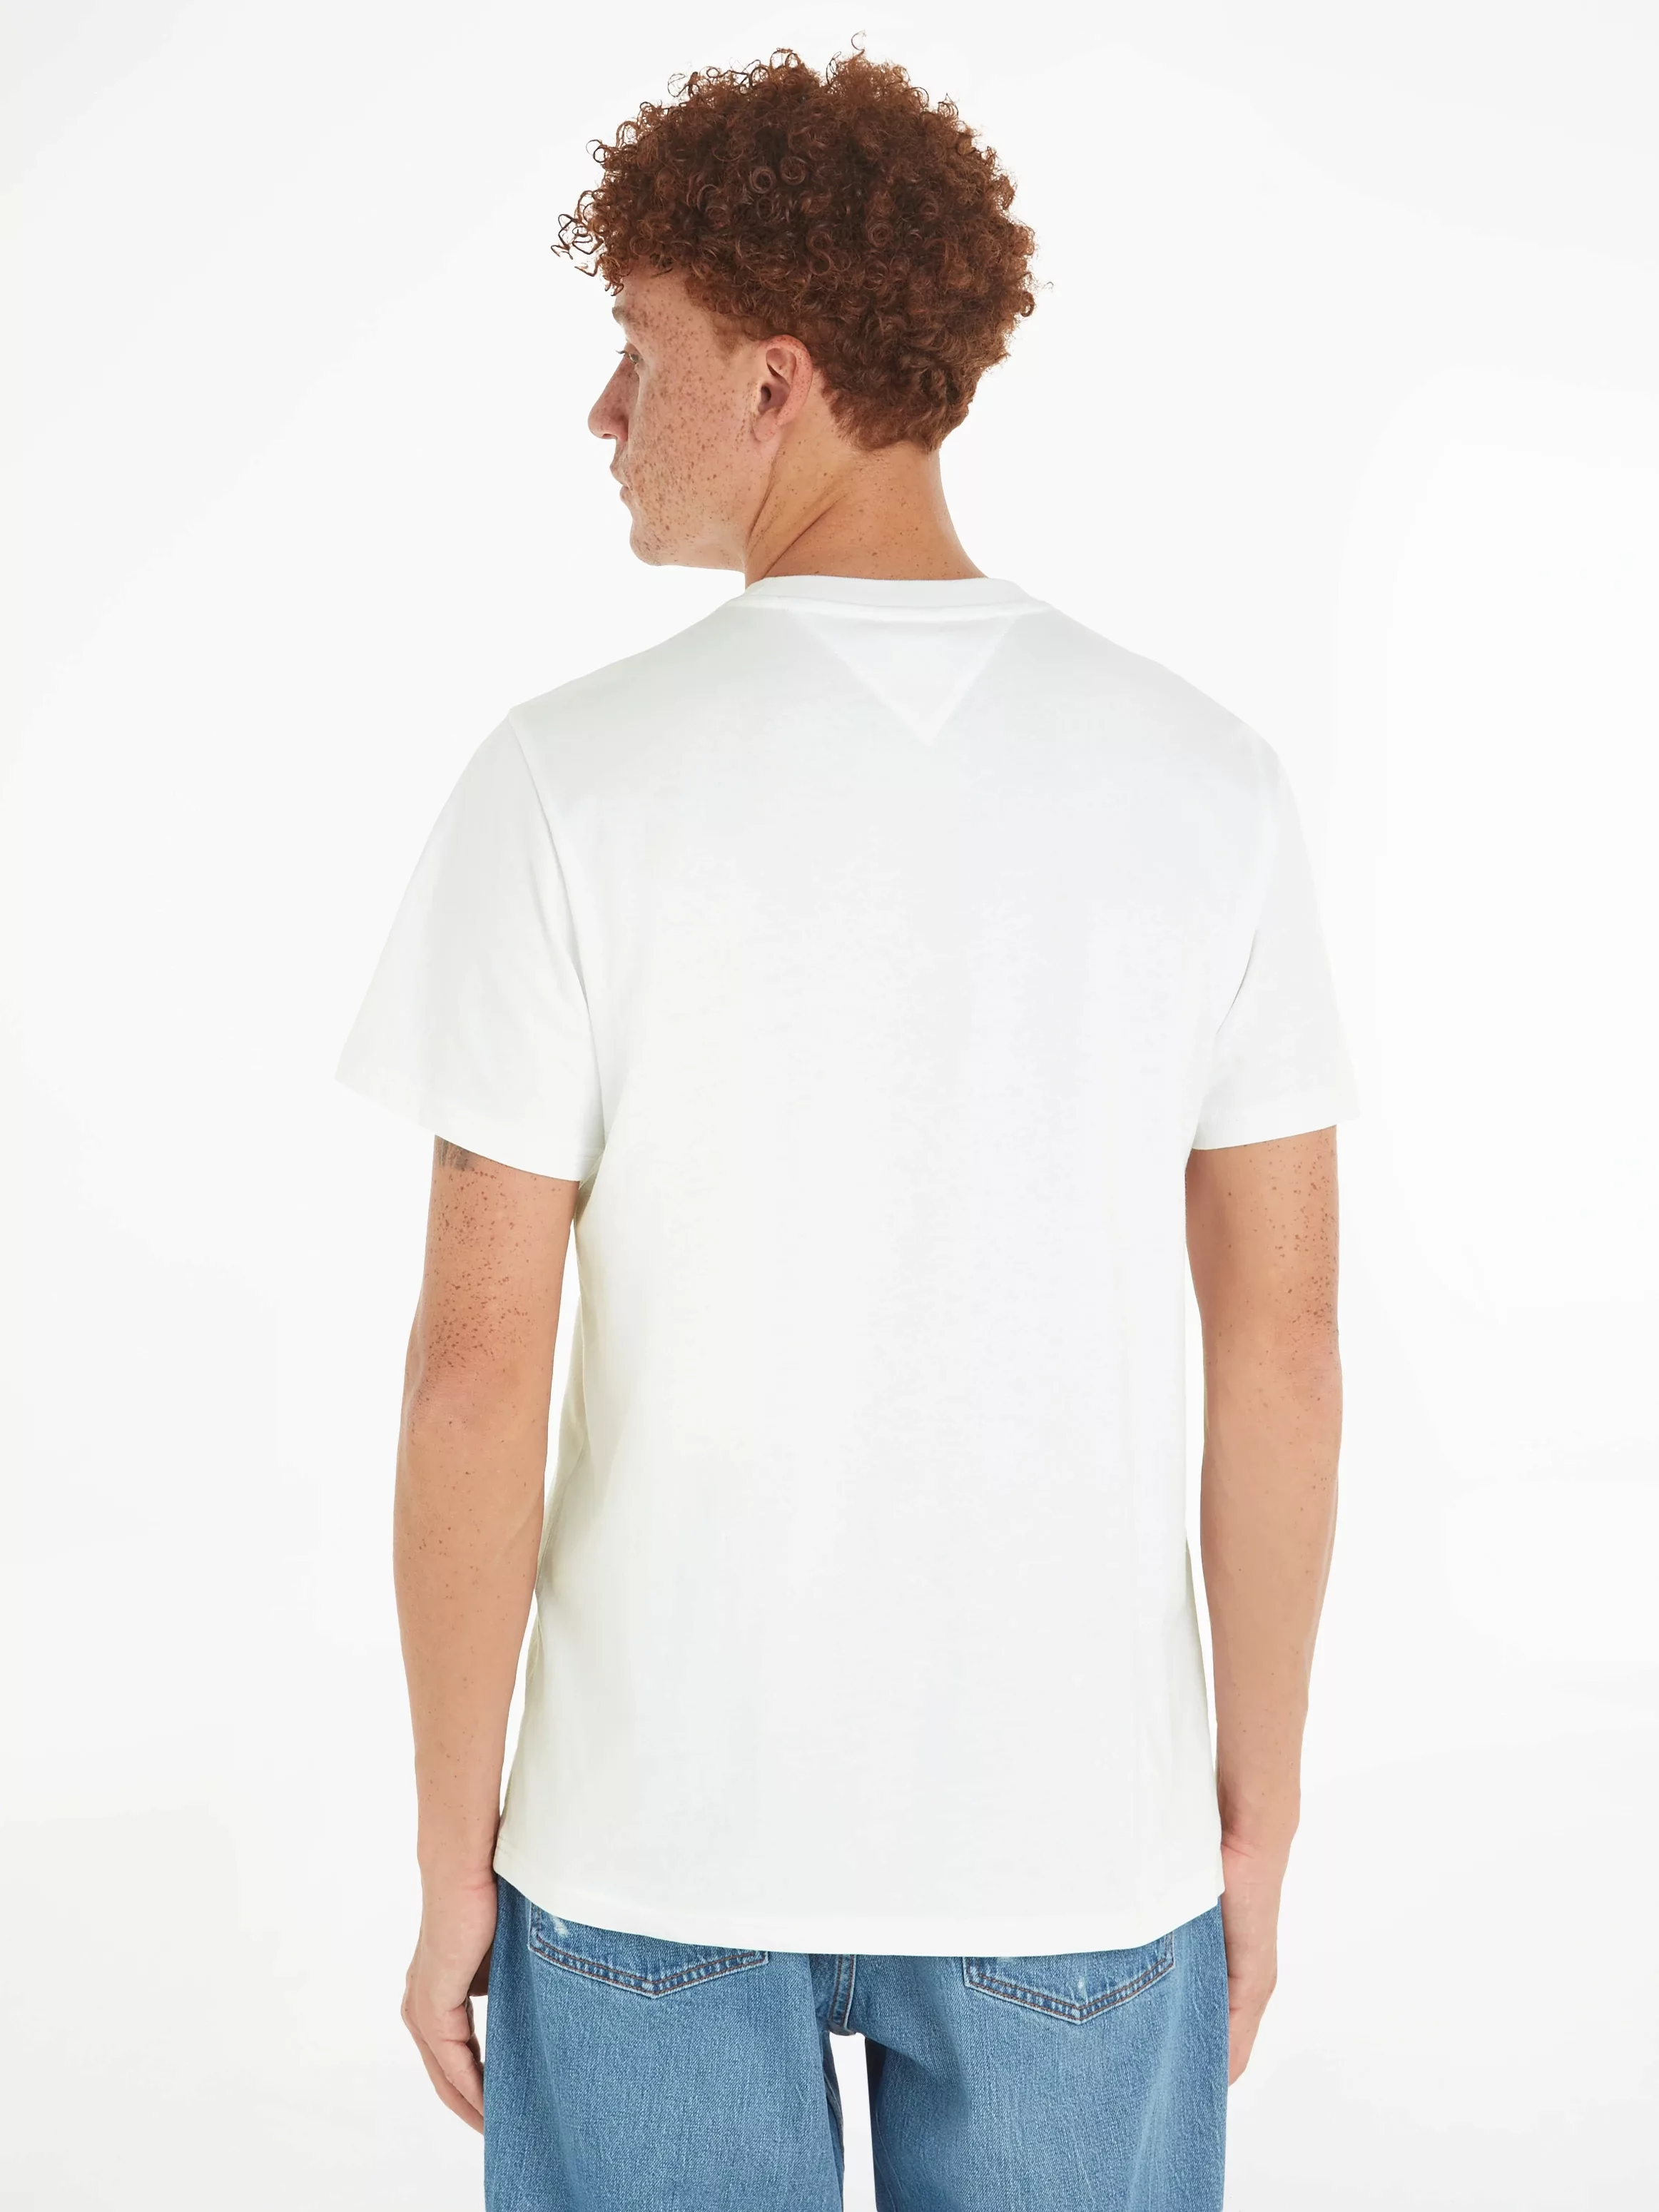 Tommy Jeans T-Shirt "TJM SLIM ESSTNL GRAPHIC TEE EXT", mit Tommy Jeans Logo günstig online kaufen